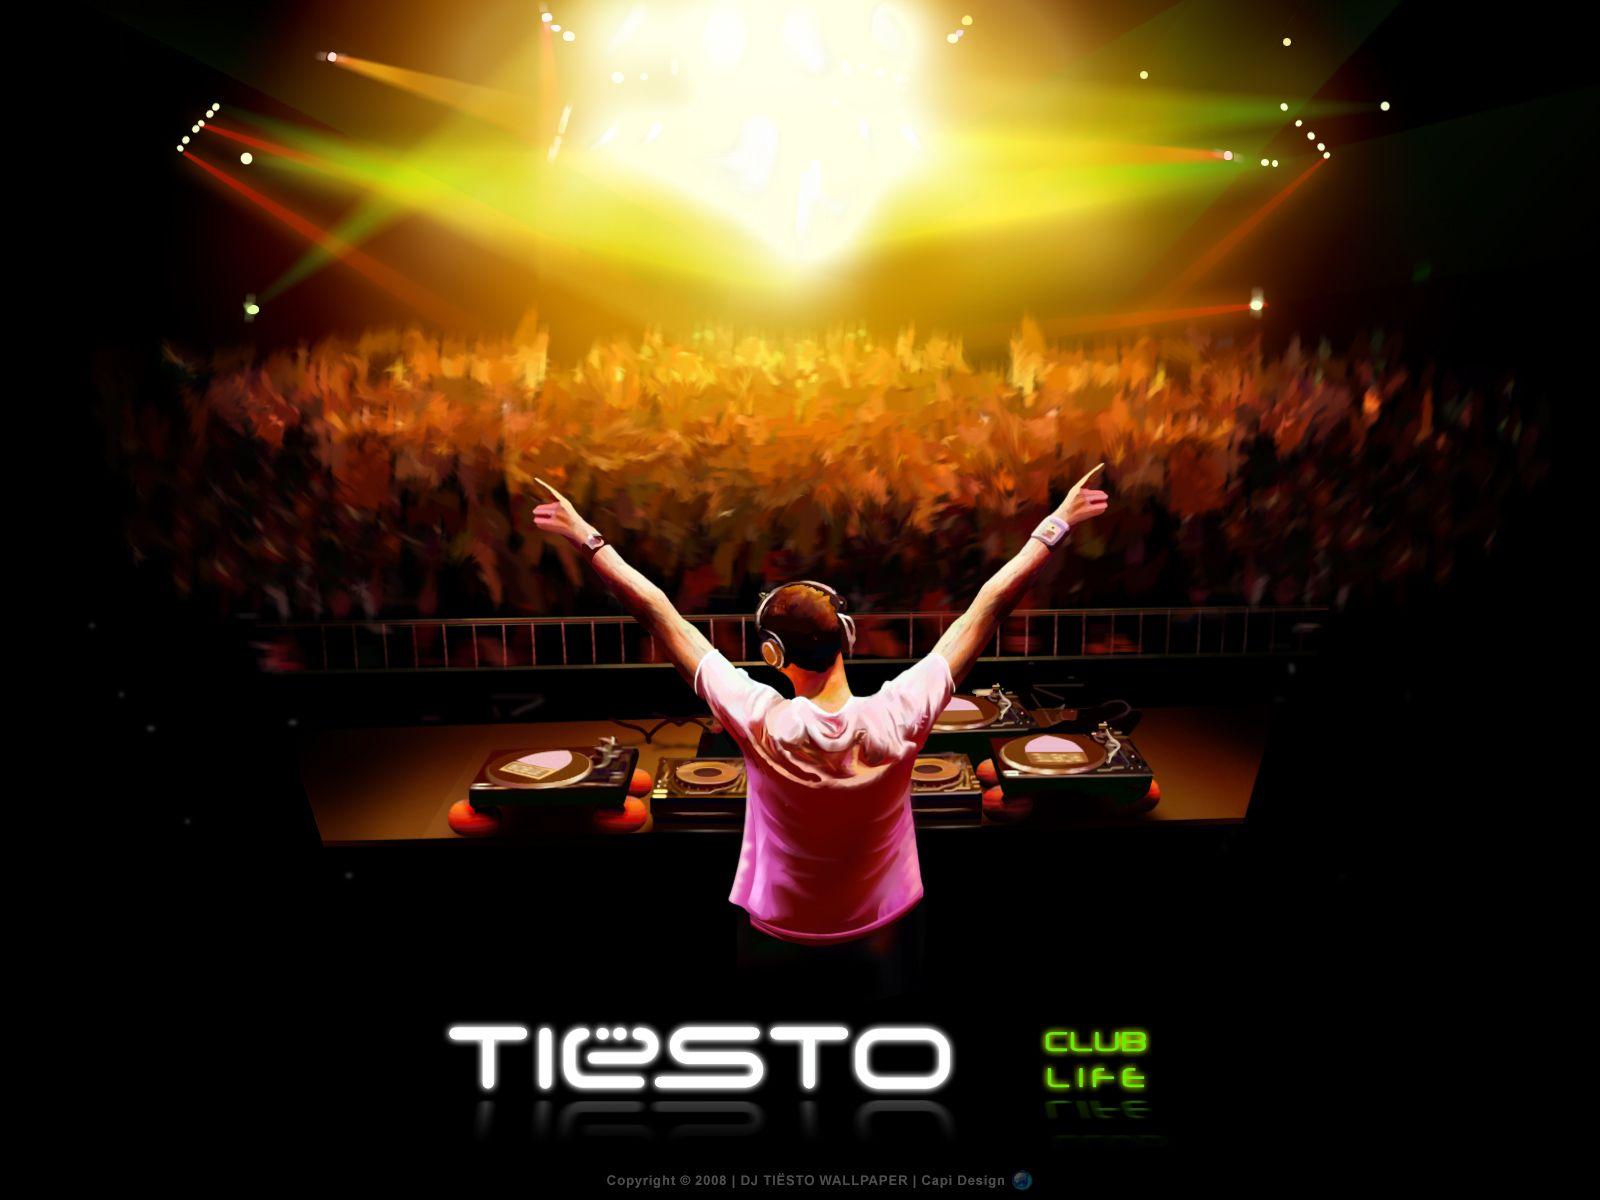 Download the Tiesto DJ Wallpaper, Tiesto DJ iPhone Wallpaper, Tiesto